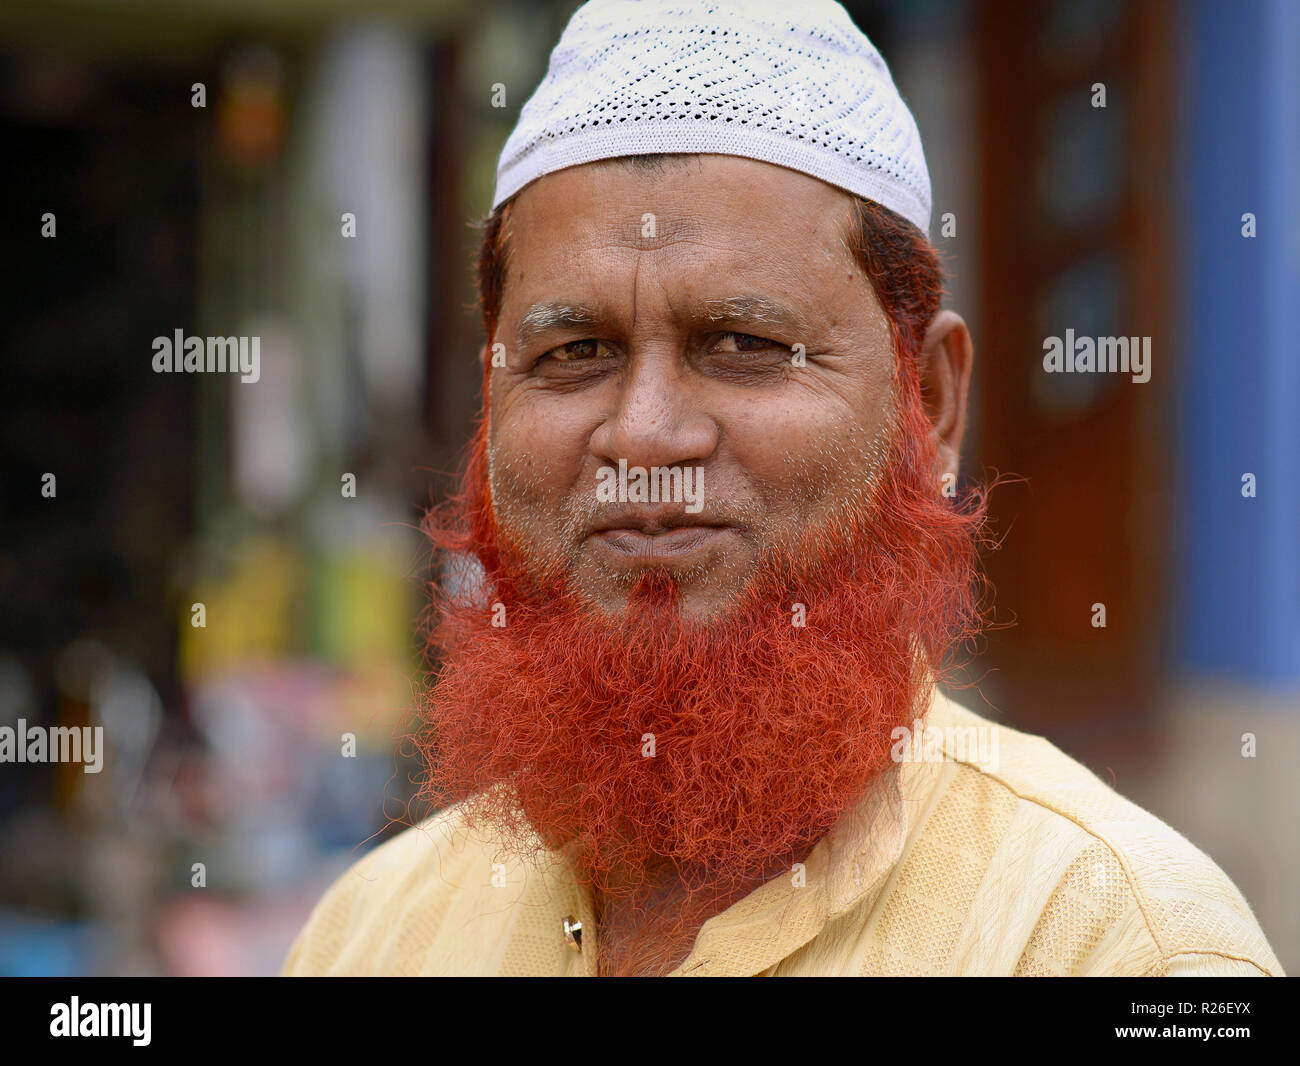 Anziani musulmani indiani uomo con henna-tinto barba islamica indossa una preghiera di Bianca Cappello (taqiyah) e sorrisi per la fotocamera. Foto Stock